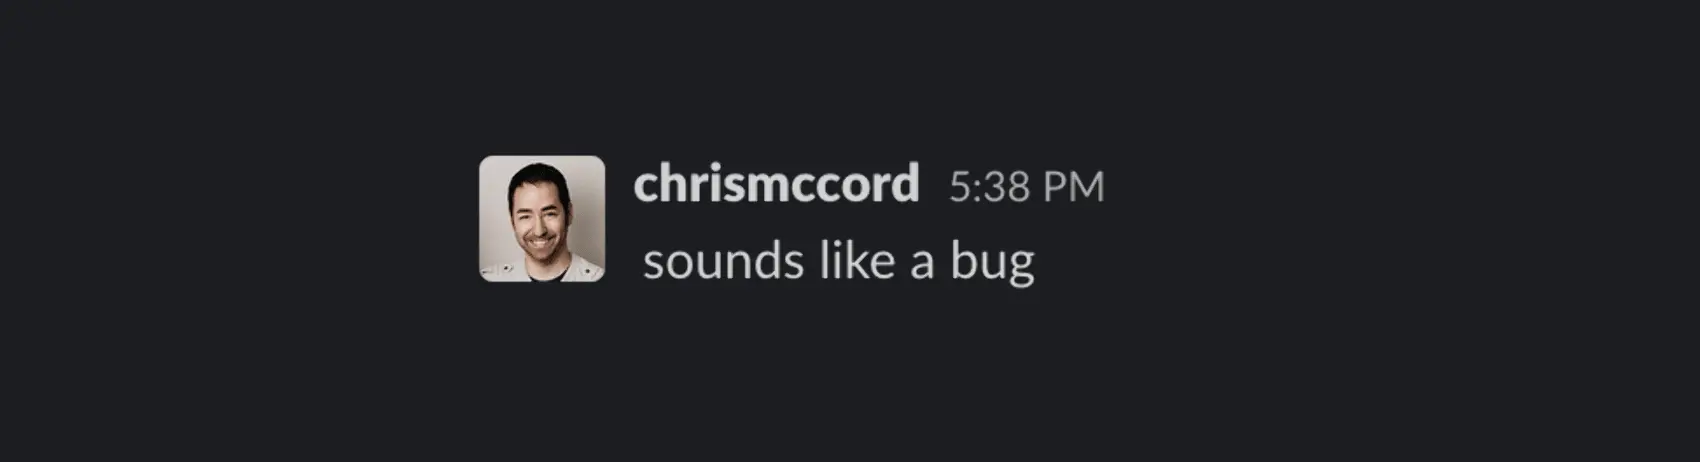 Chris McCord: sounds like a bug